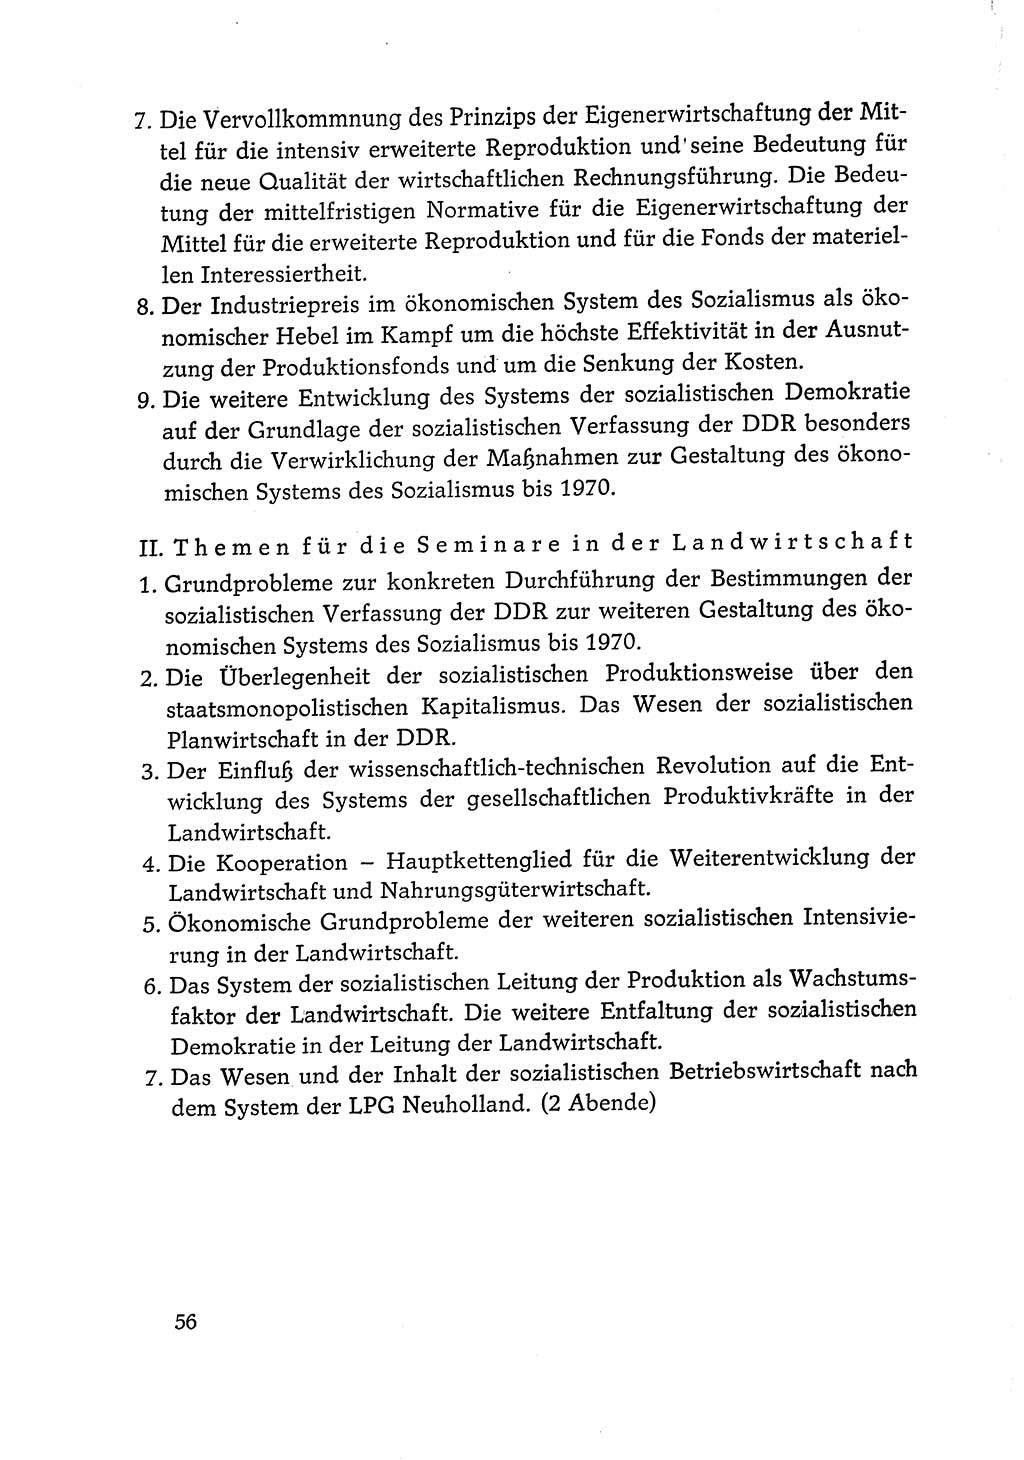 Dokumente der Sozialistischen Einheitspartei Deutschlands (SED) [Deutsche Demokratische Republik (DDR)] 1968-1969, Seite 56 (Dok. SED DDR 1968-1969, S. 56)